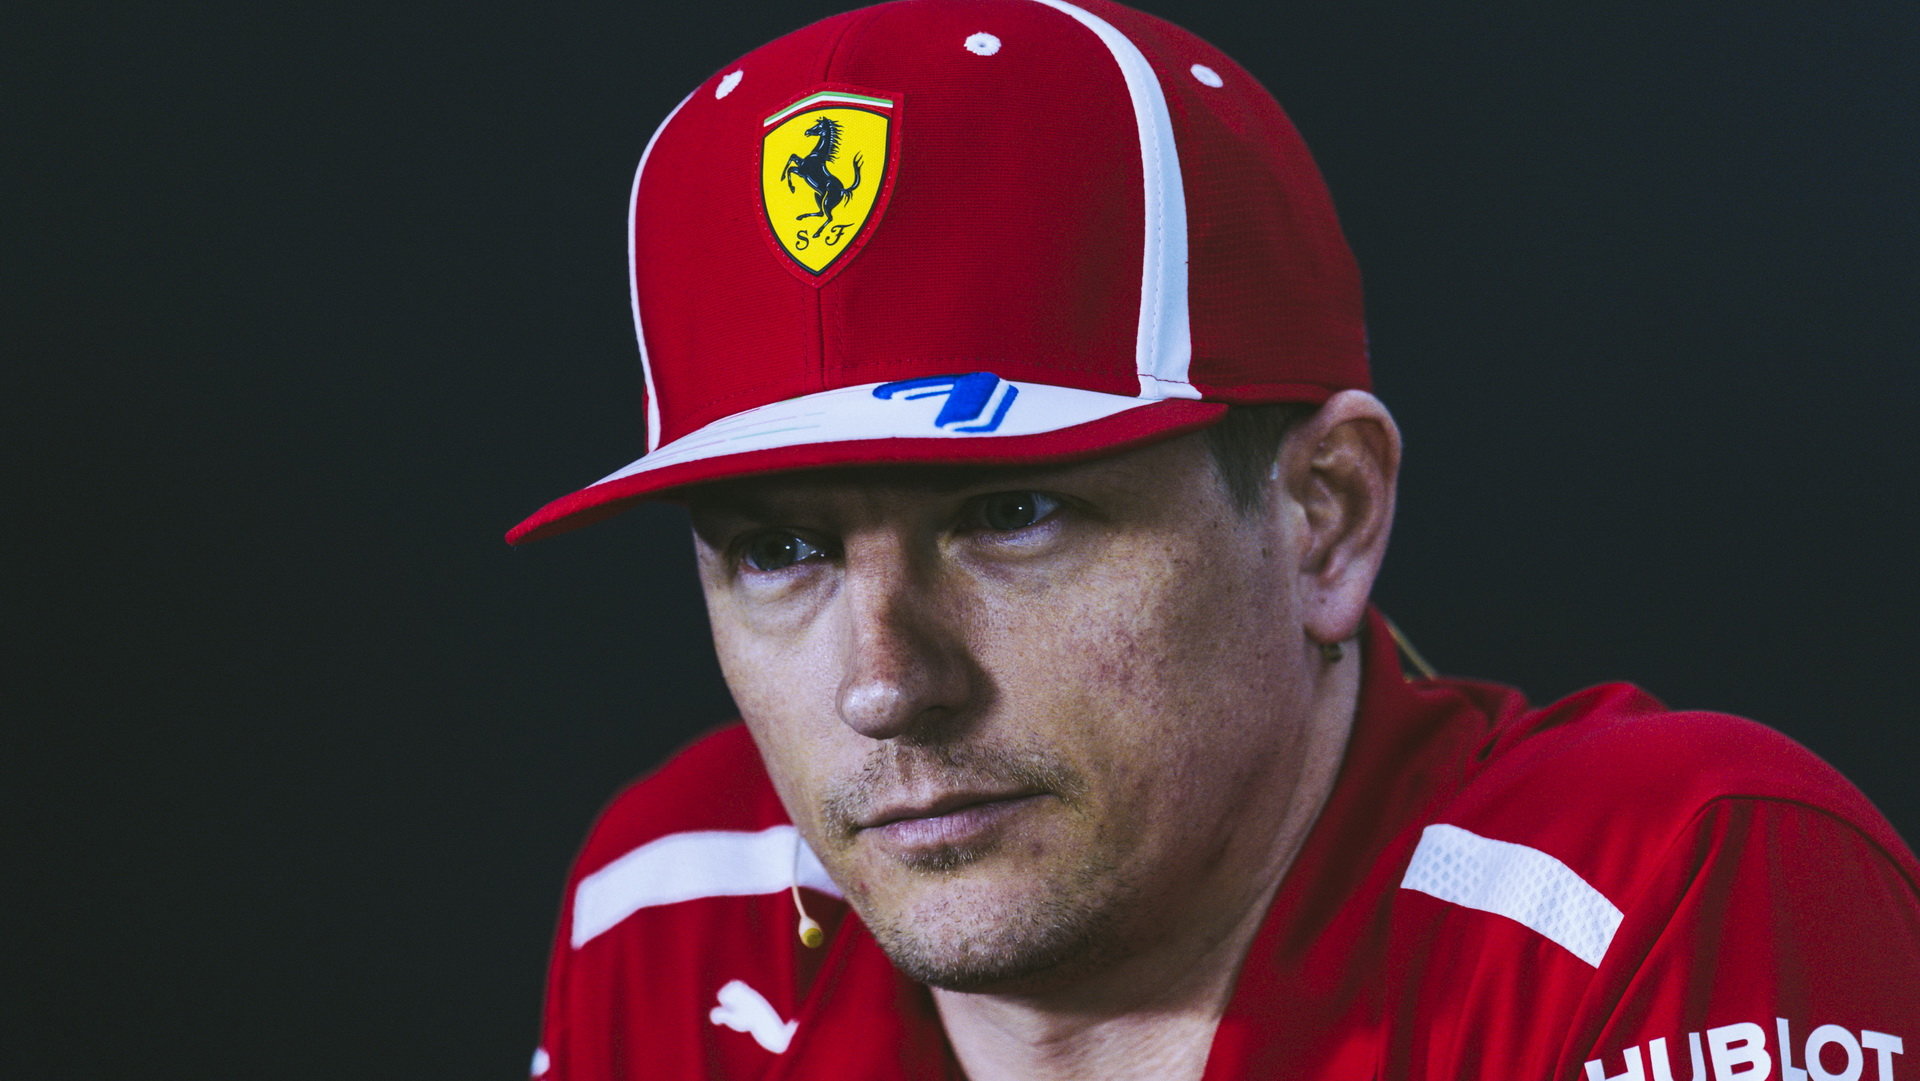 Kimi Räikkönen musel odstavit vůz předčasně